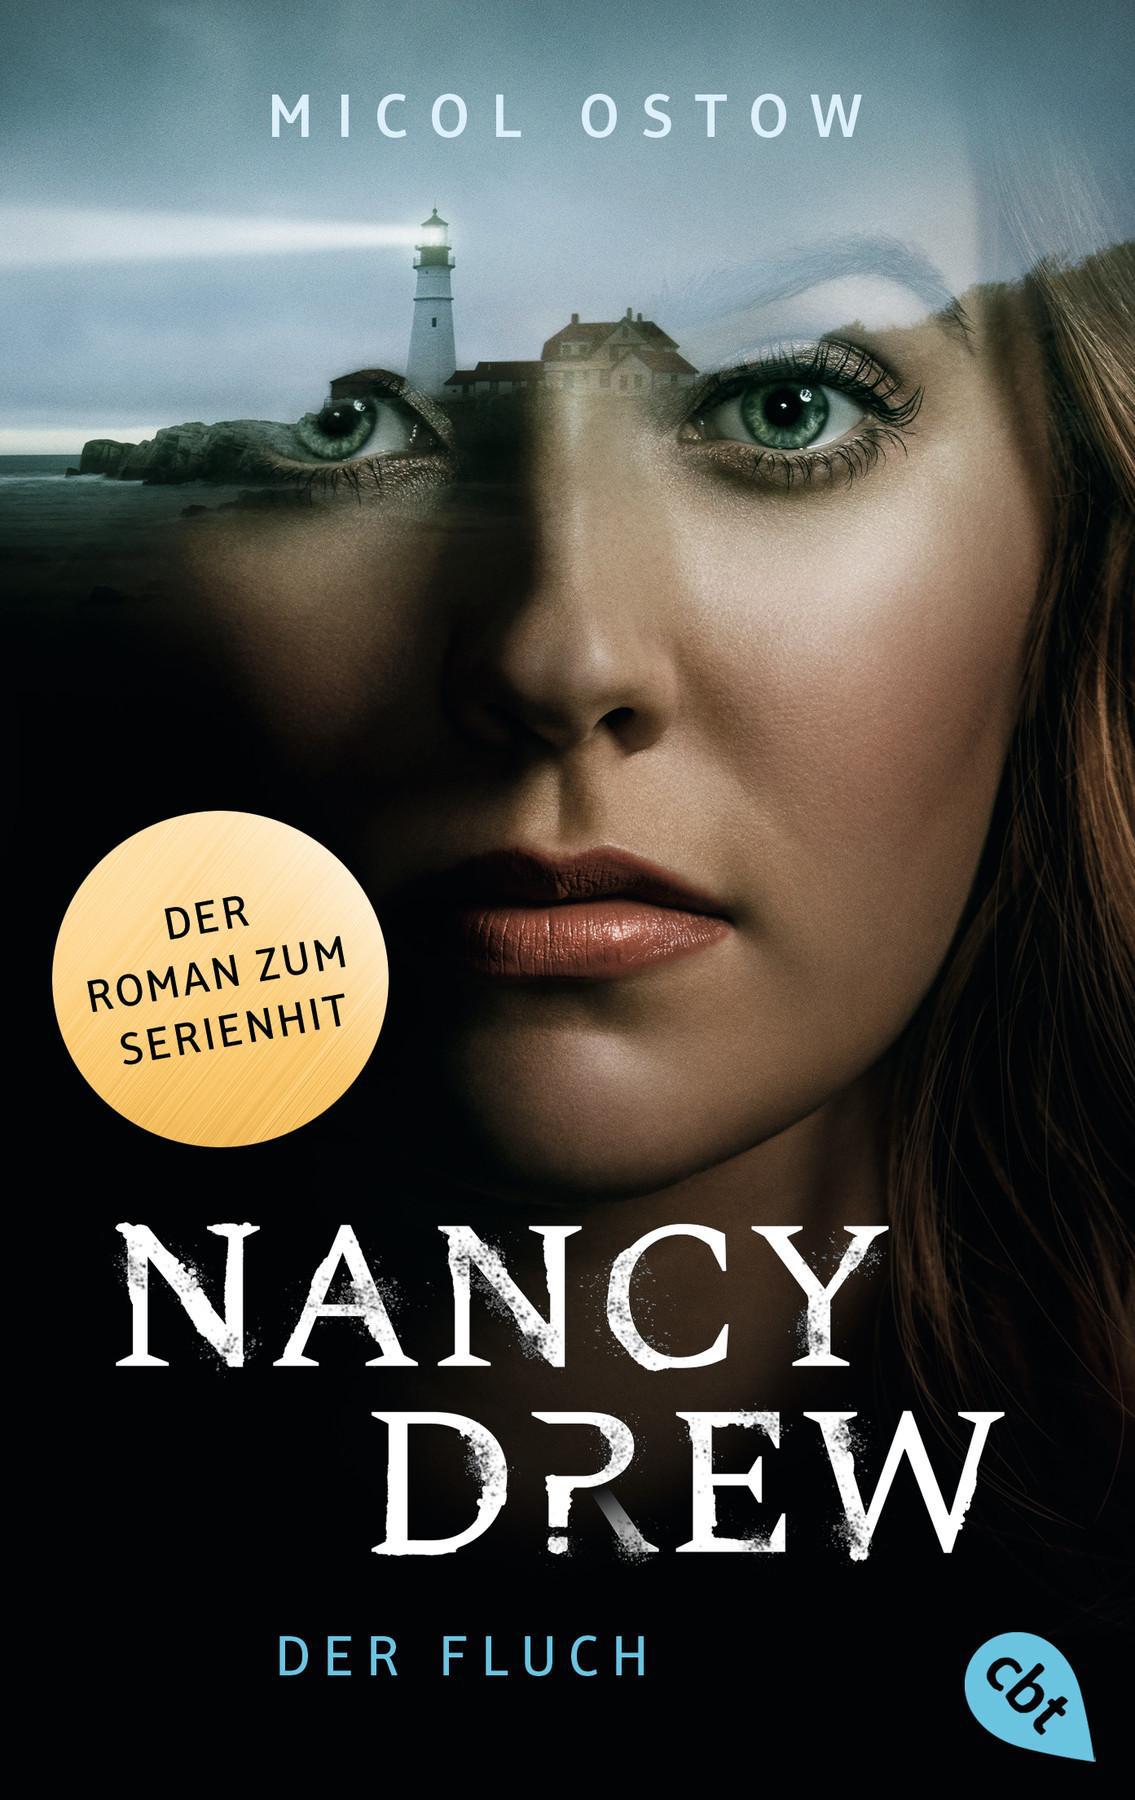 Nancy Drew by Micol Ostow